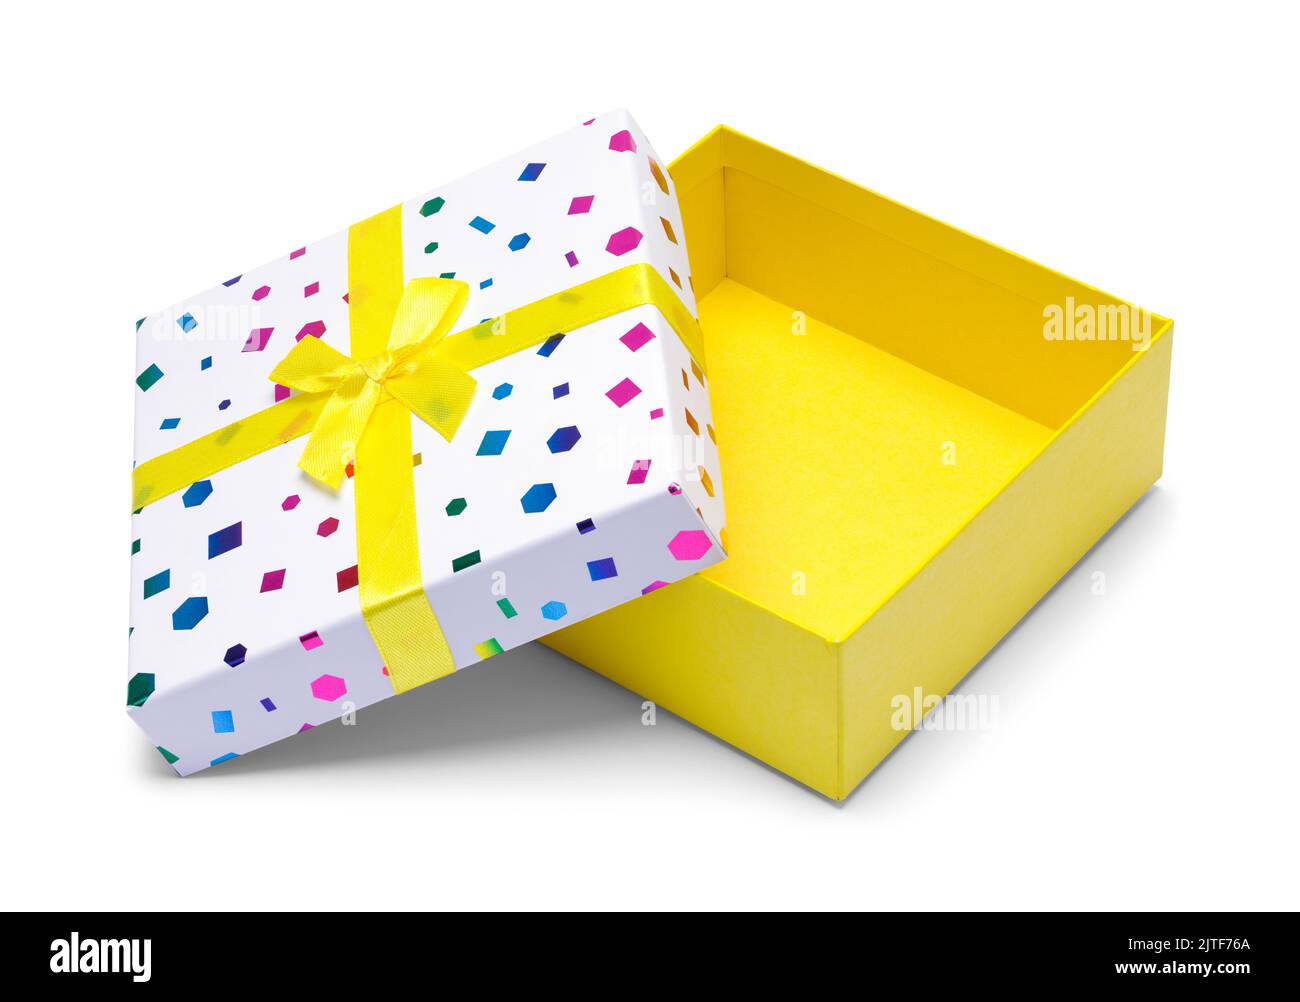 Caja de regalo amarilla abierta con abertura en la tapa. Foto de stock